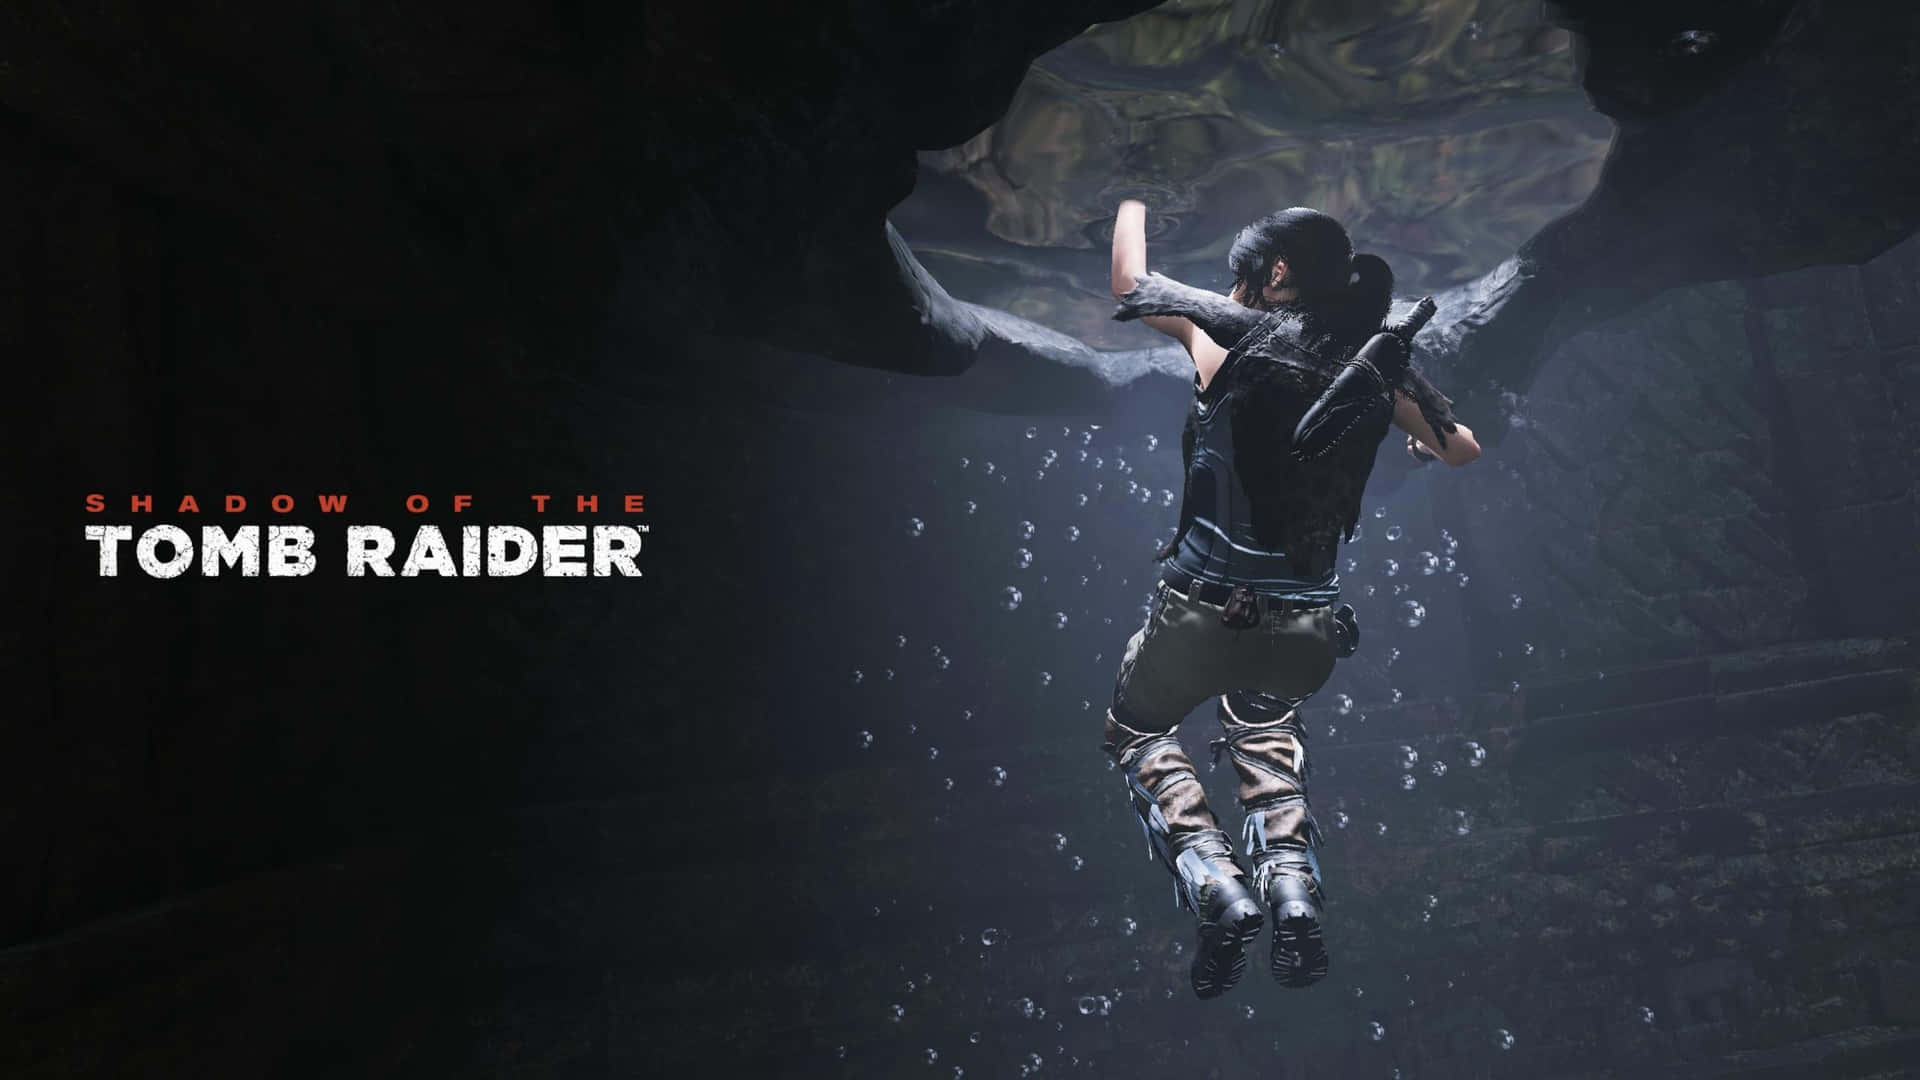 Fondode Pantalla En 4k Del Arte Clave Del Videojuego Shadow Of The Tomb Raider